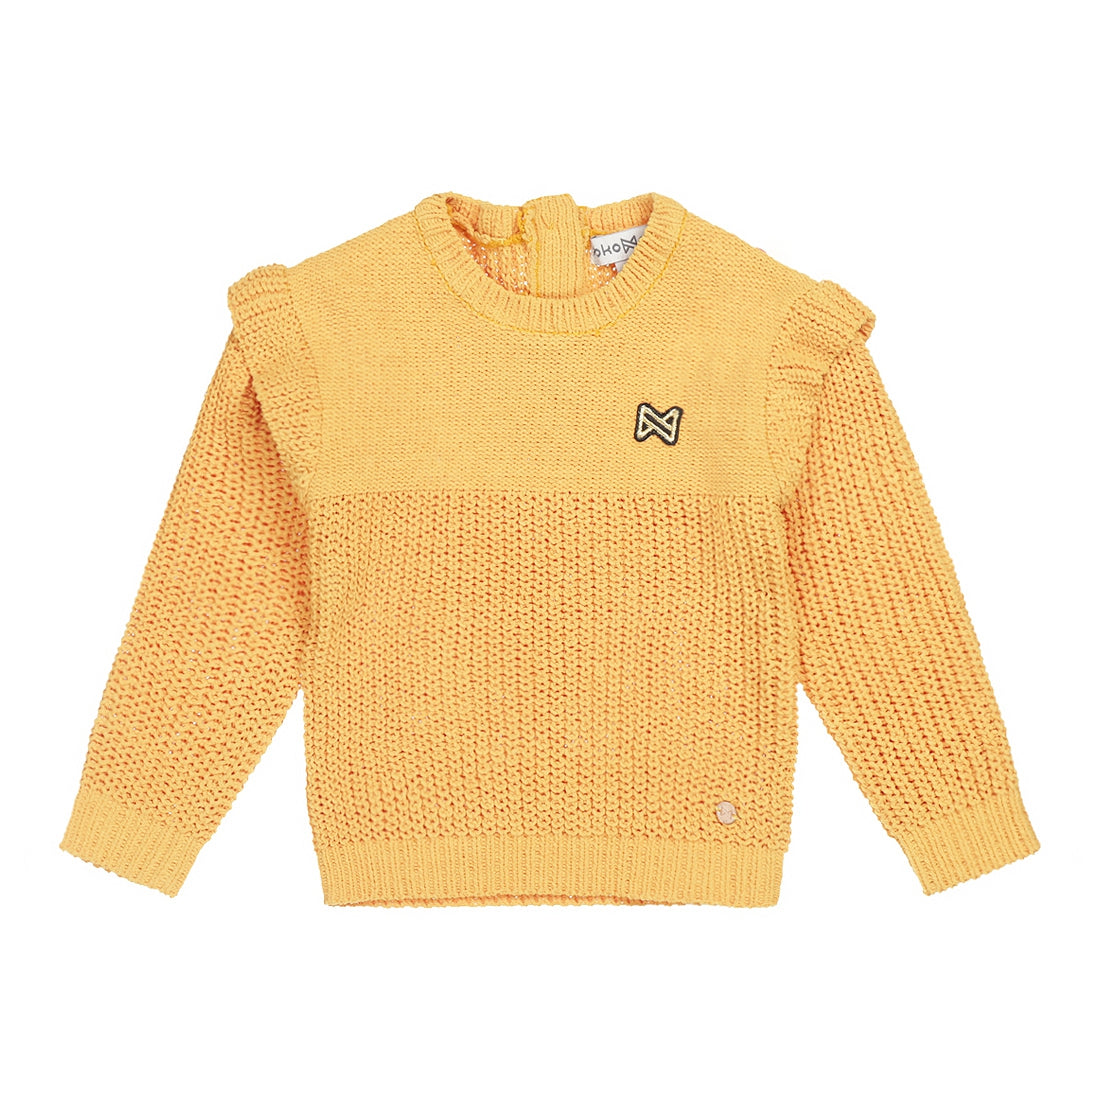 Meisjes Sweater ls with crewneck van Koko Noko in de kleur Ochre in maat 128.